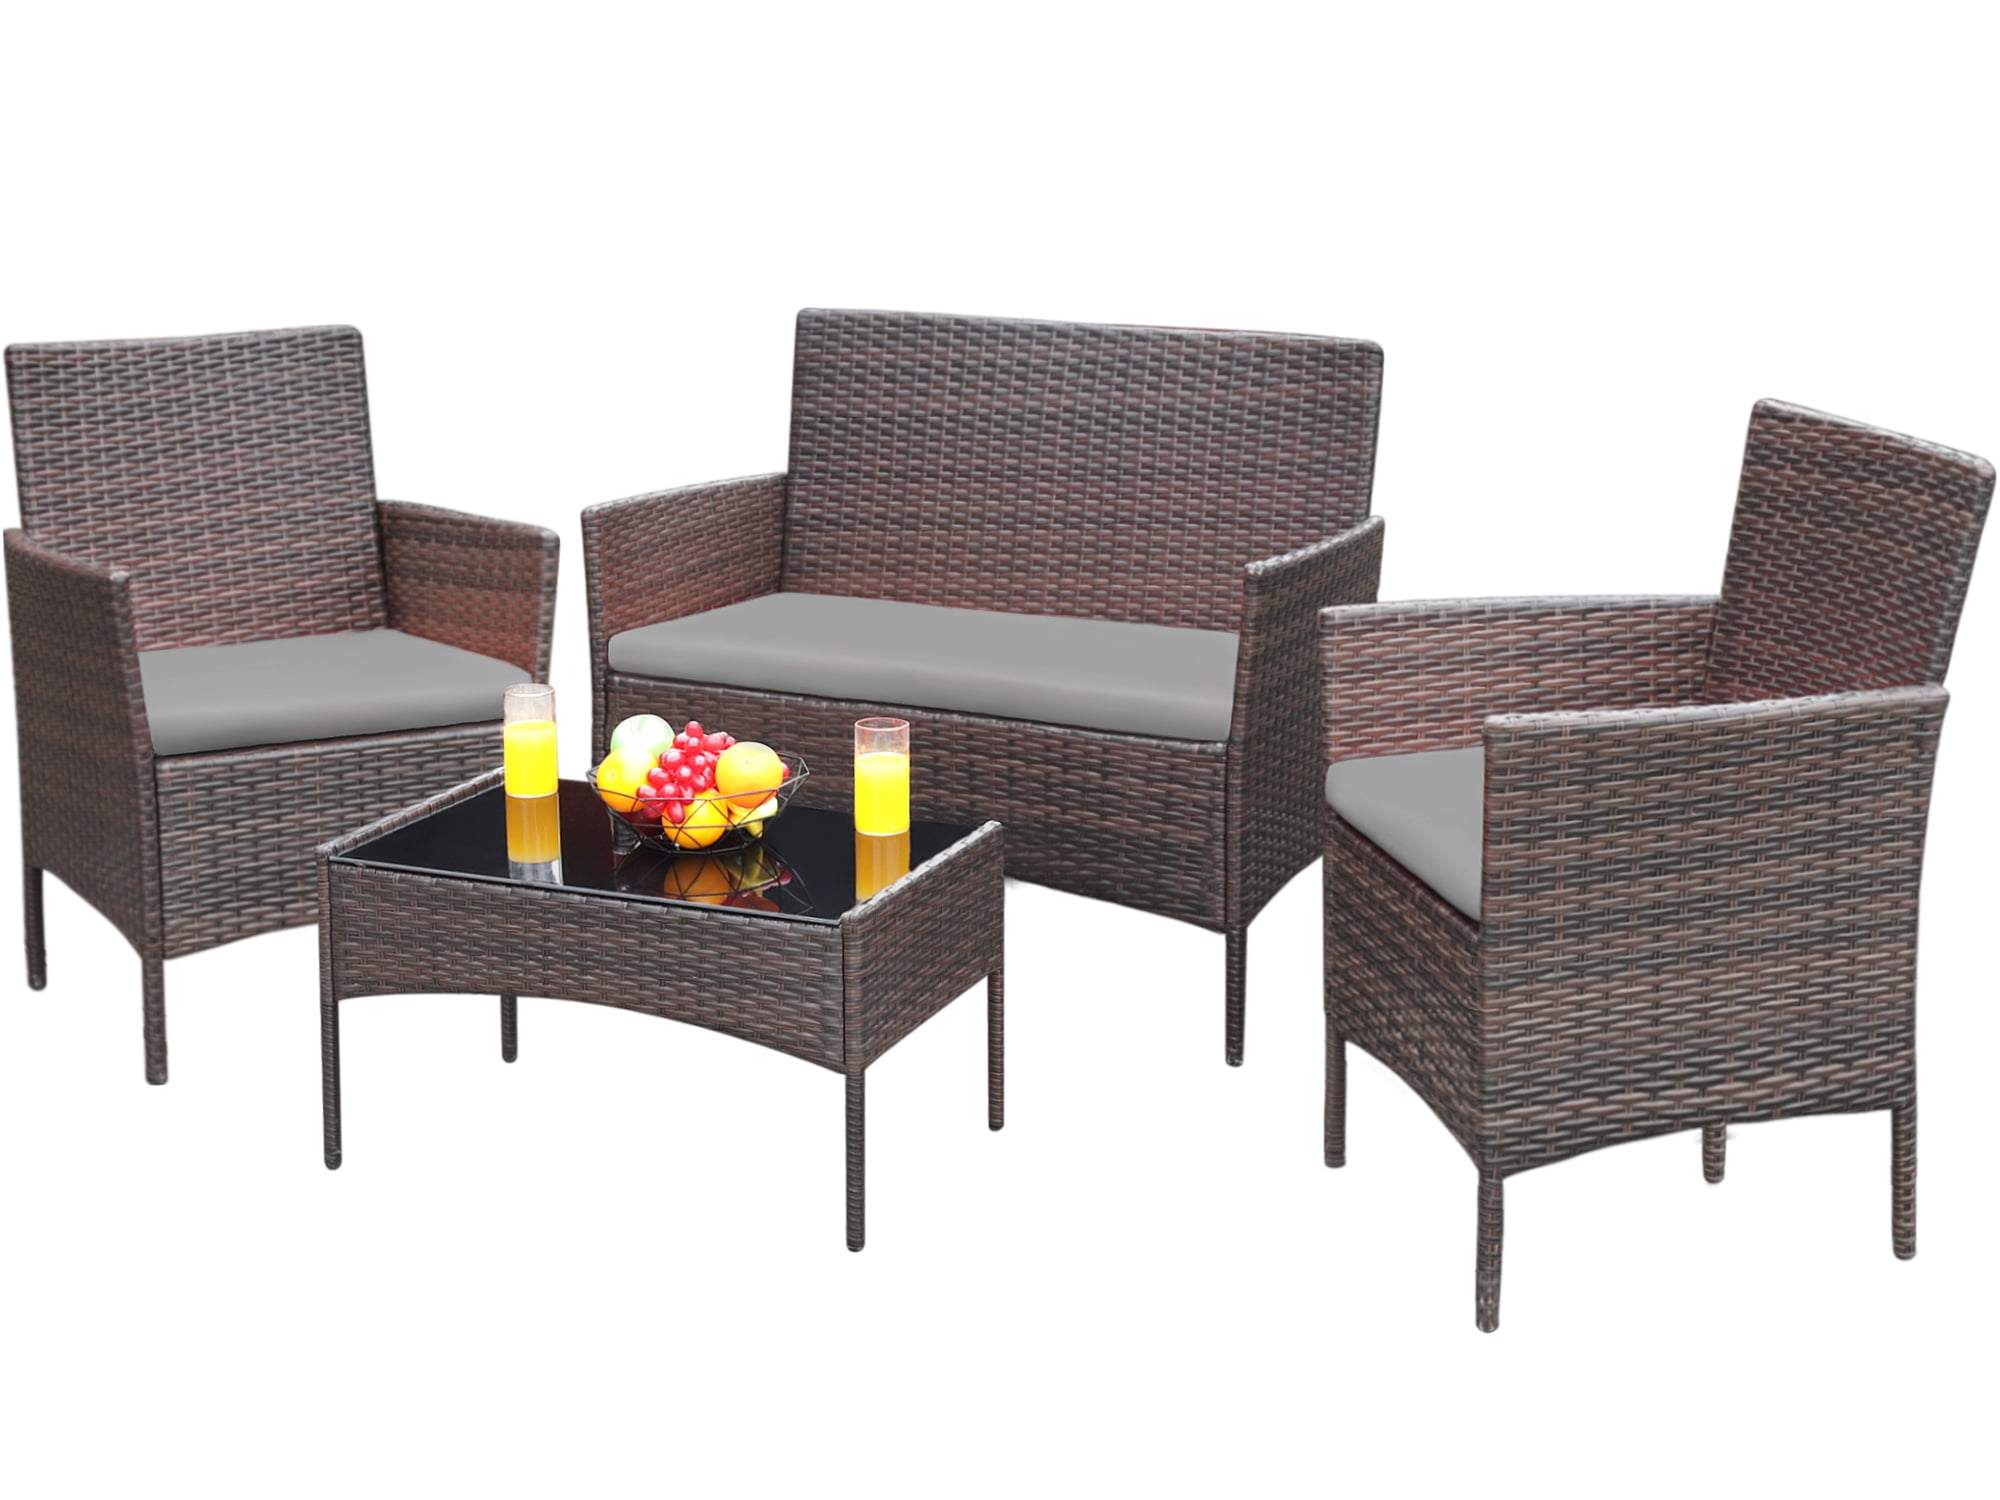 Devoko 4 Pieces Outdoor Patio Conversation Set PE Rattan Wicker Furniture Set, Brown/Gray